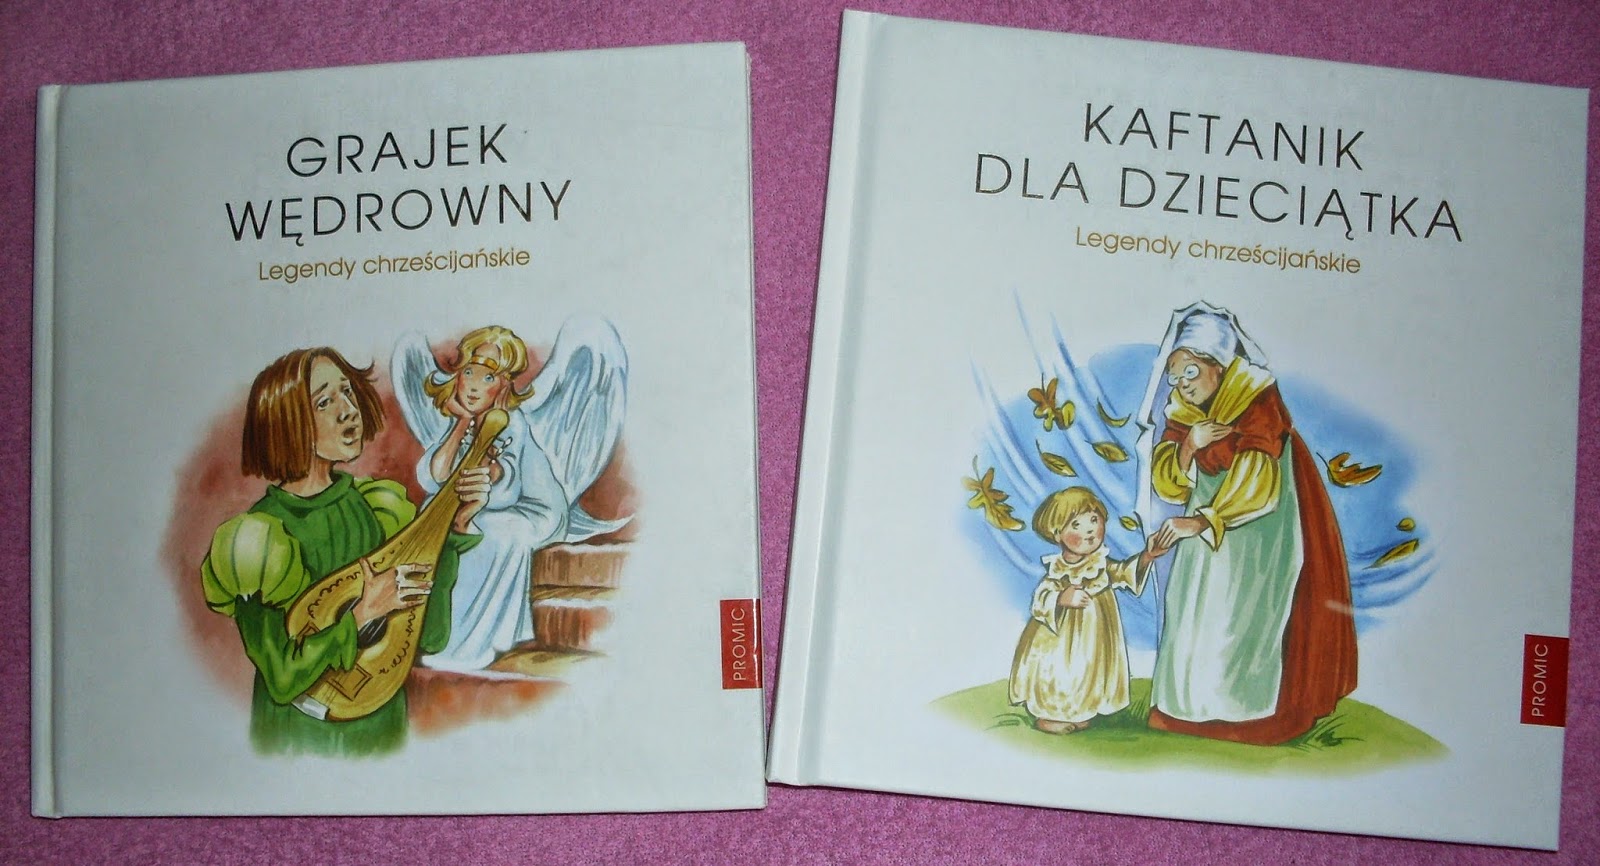 http://wydawnictwo.pl/pl/p/Grajek-wedrowny.-Legendy-chrzescijanskie-II/3681